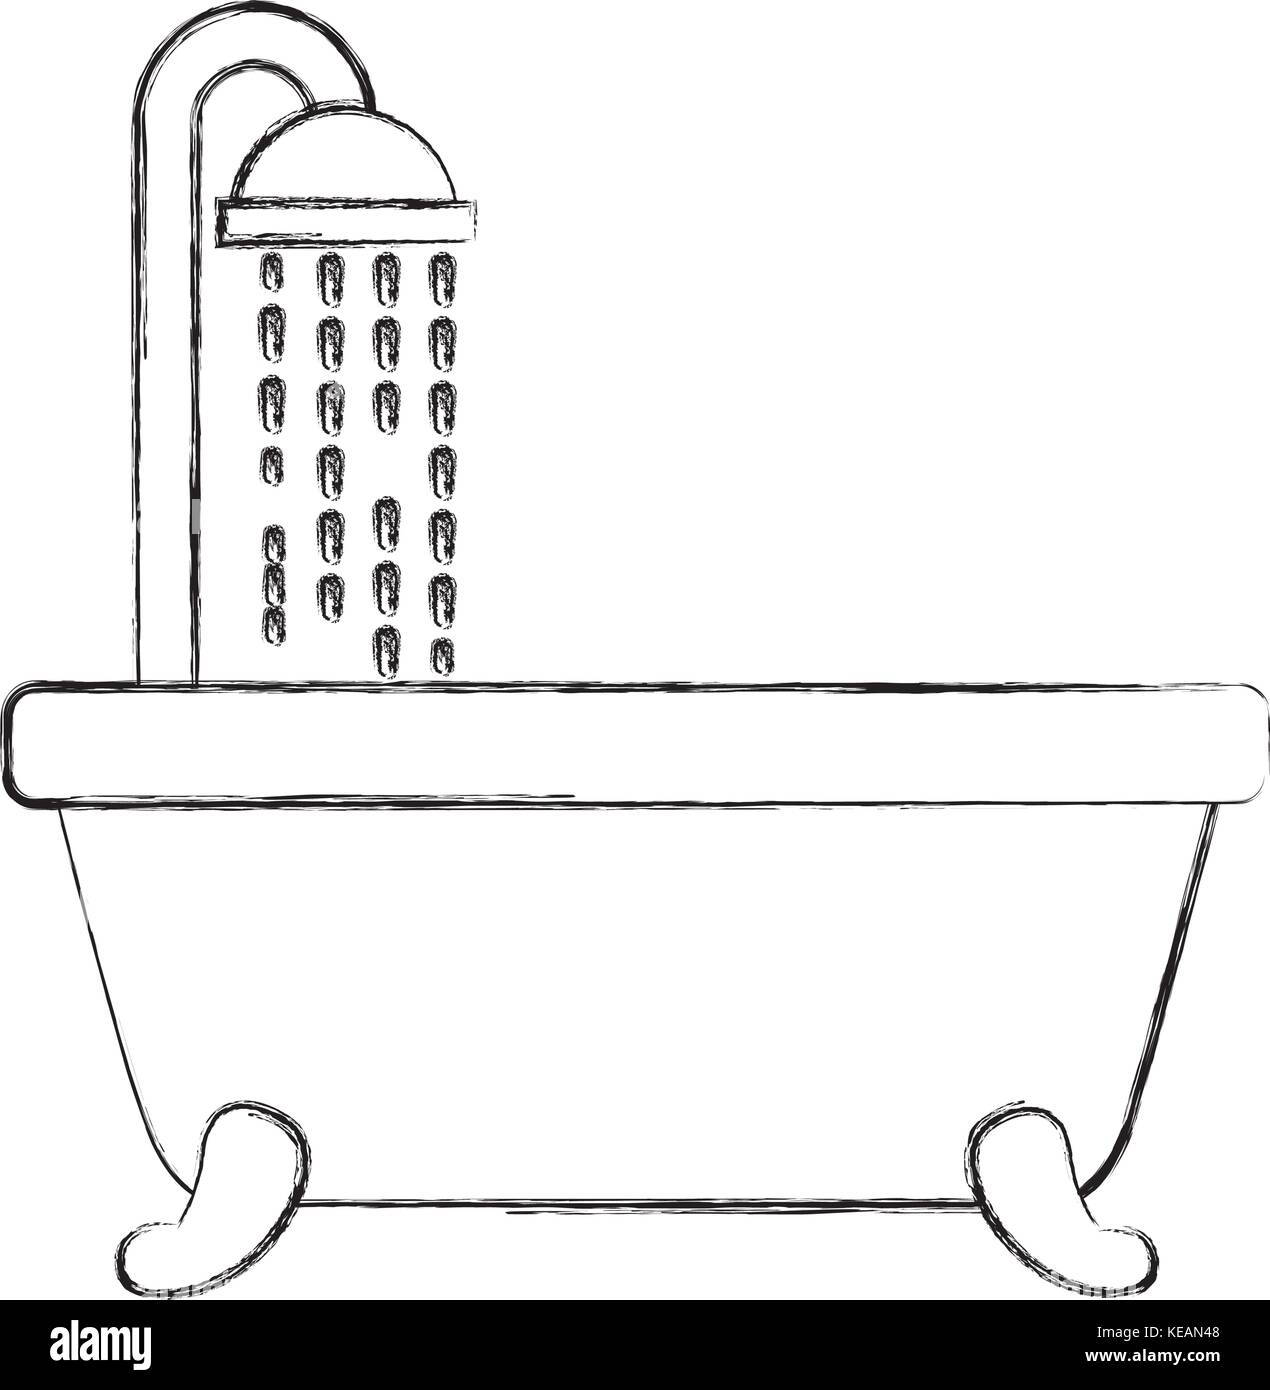 Old style bathtub Banque d'images vectorielles - Alamy